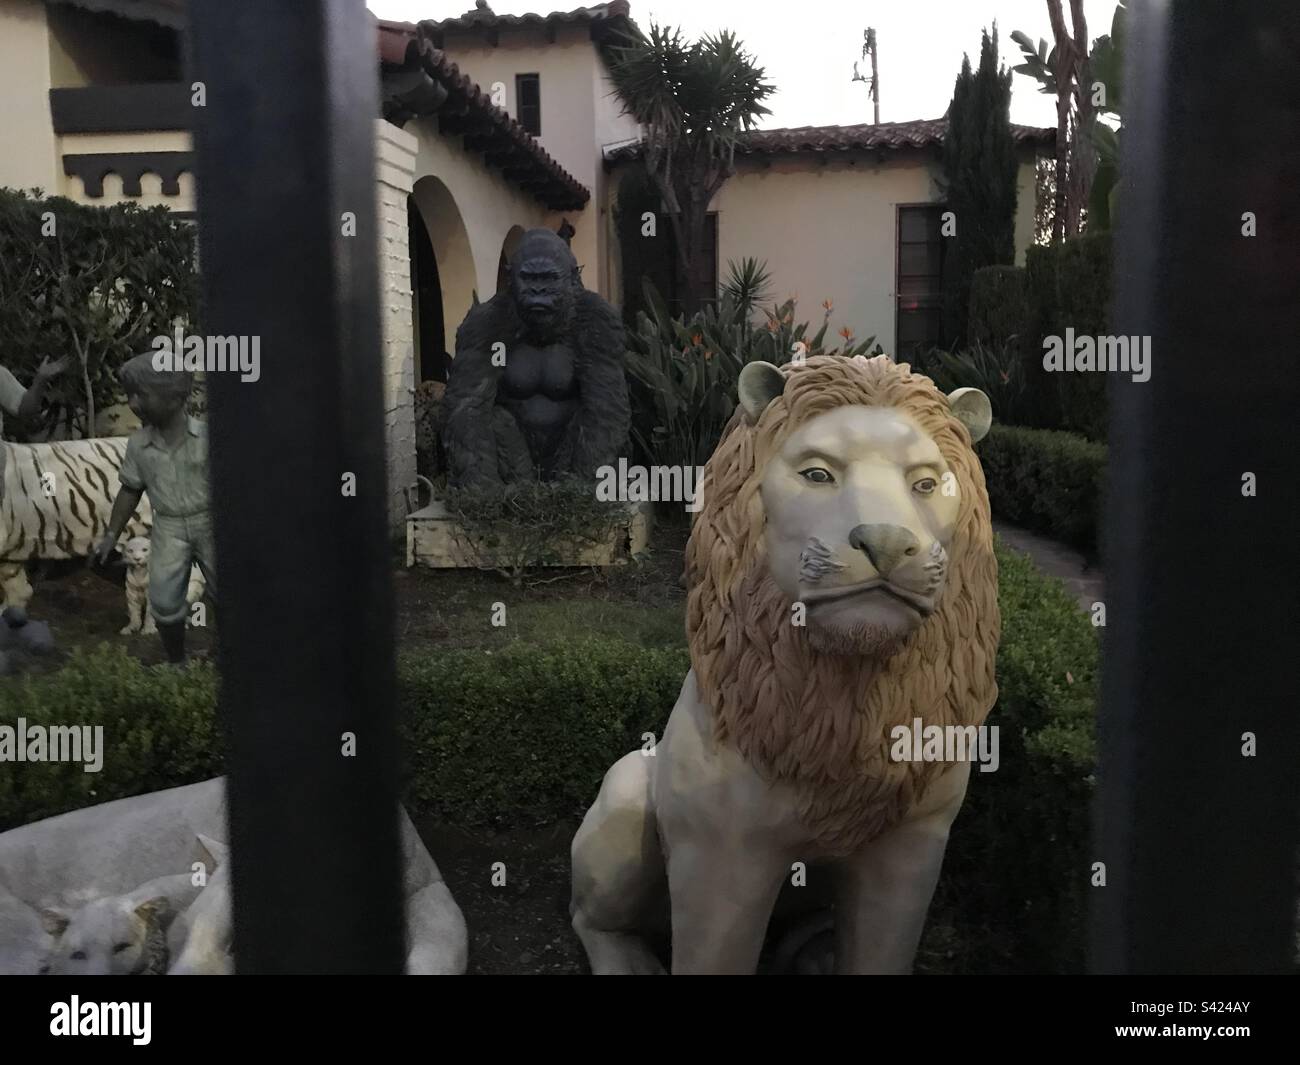 Un leone e un gorilla sembrano custodire questa casa di Beverly, California, ma sono solo due delle tante statue che abitano il cortile. Foto Stock